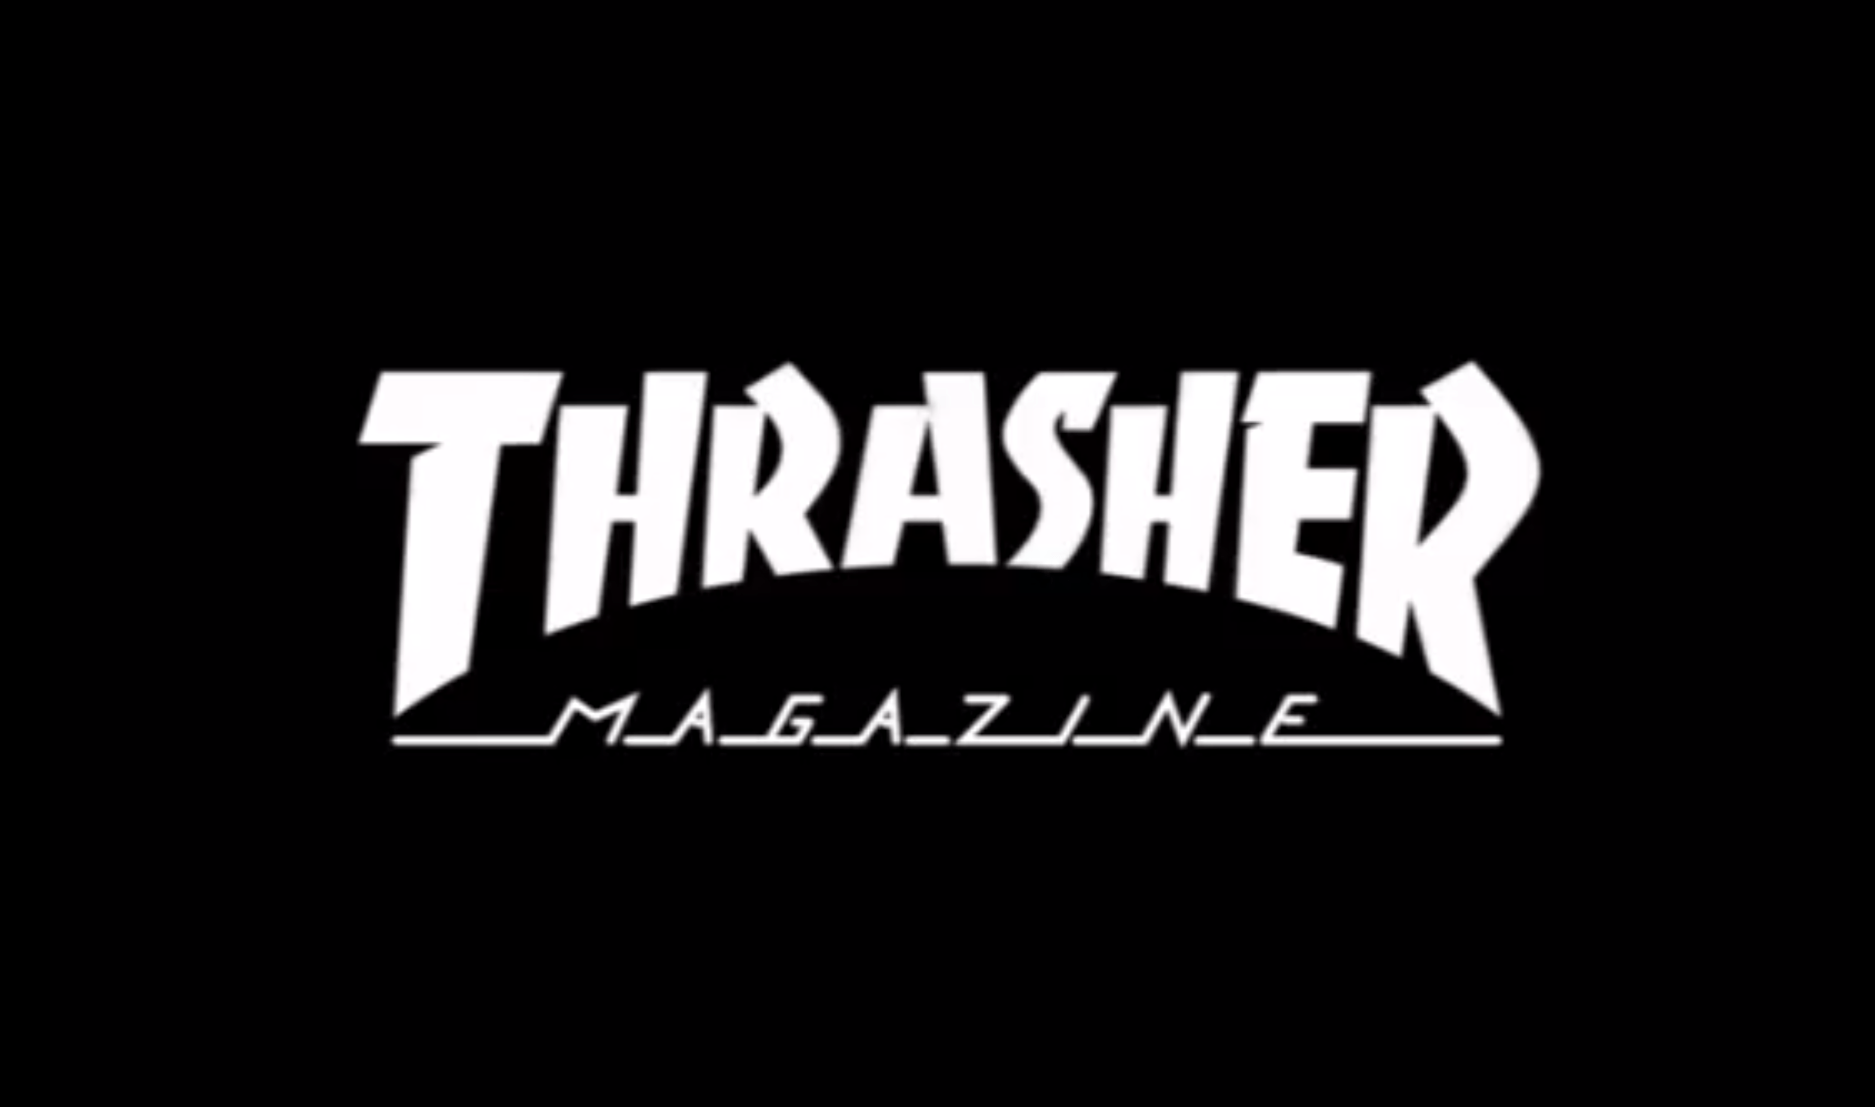 Thrasher Magazine Skate Goat Logo - Thrasher Skate Goat Wallpaper | El magazine de skate Thrasher acaba ...